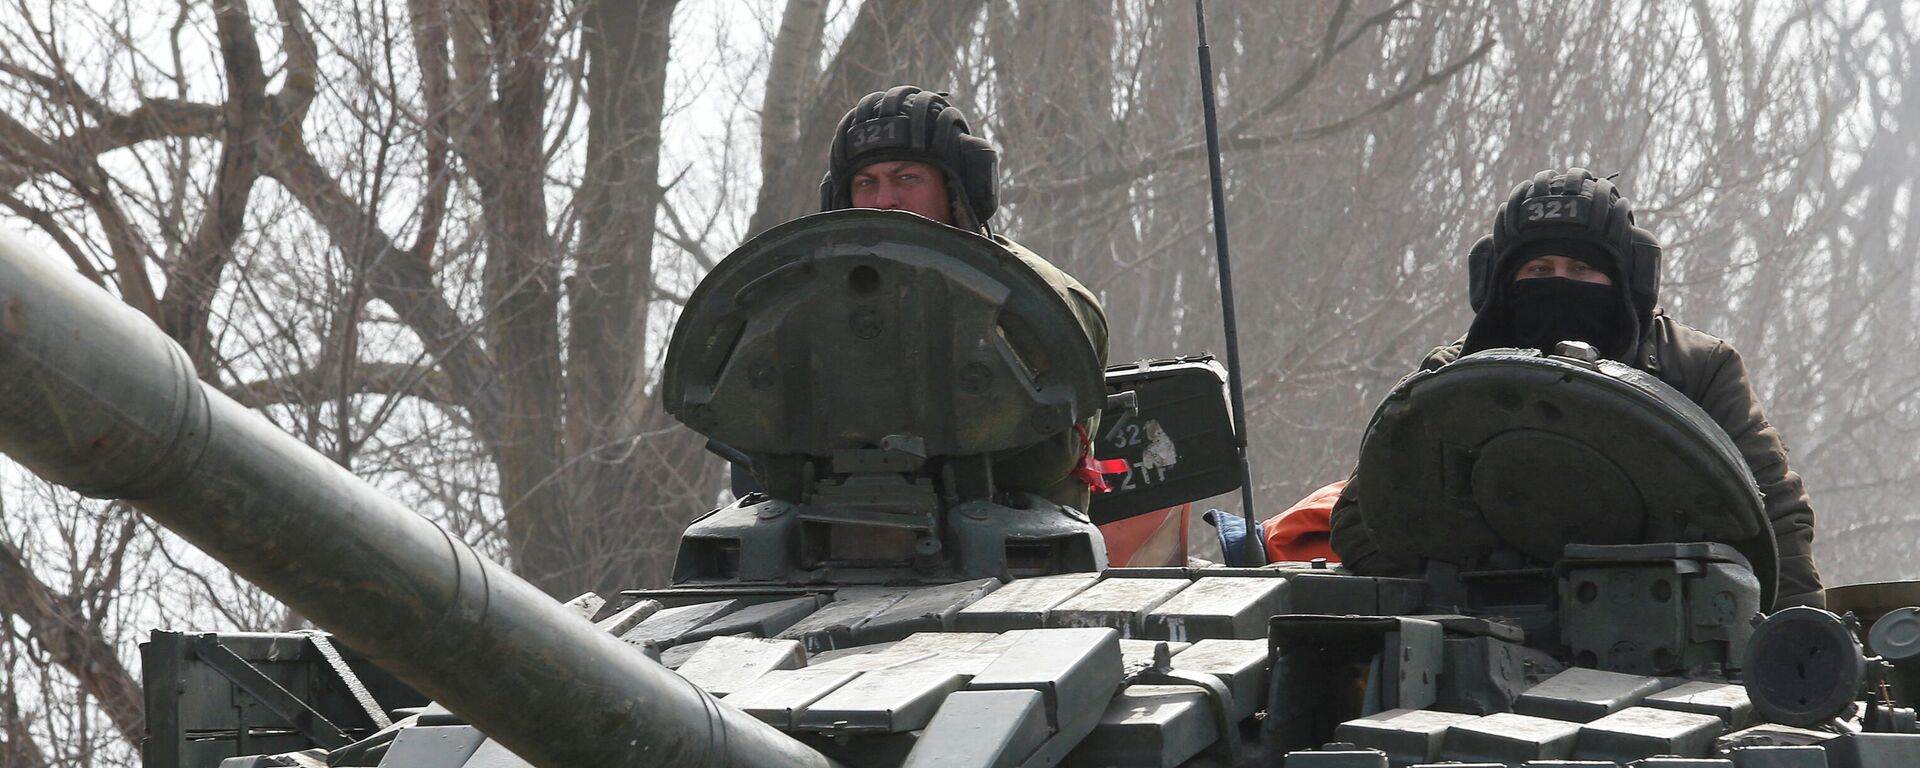 Membros do serviço de tropas pró-Rússia são vistos no topo de um tanque durante operação militar russa na região de Donetsk, Ucrânia 15 de março de 2022 - Sputnik Brasil, 1920, 17.03.2022